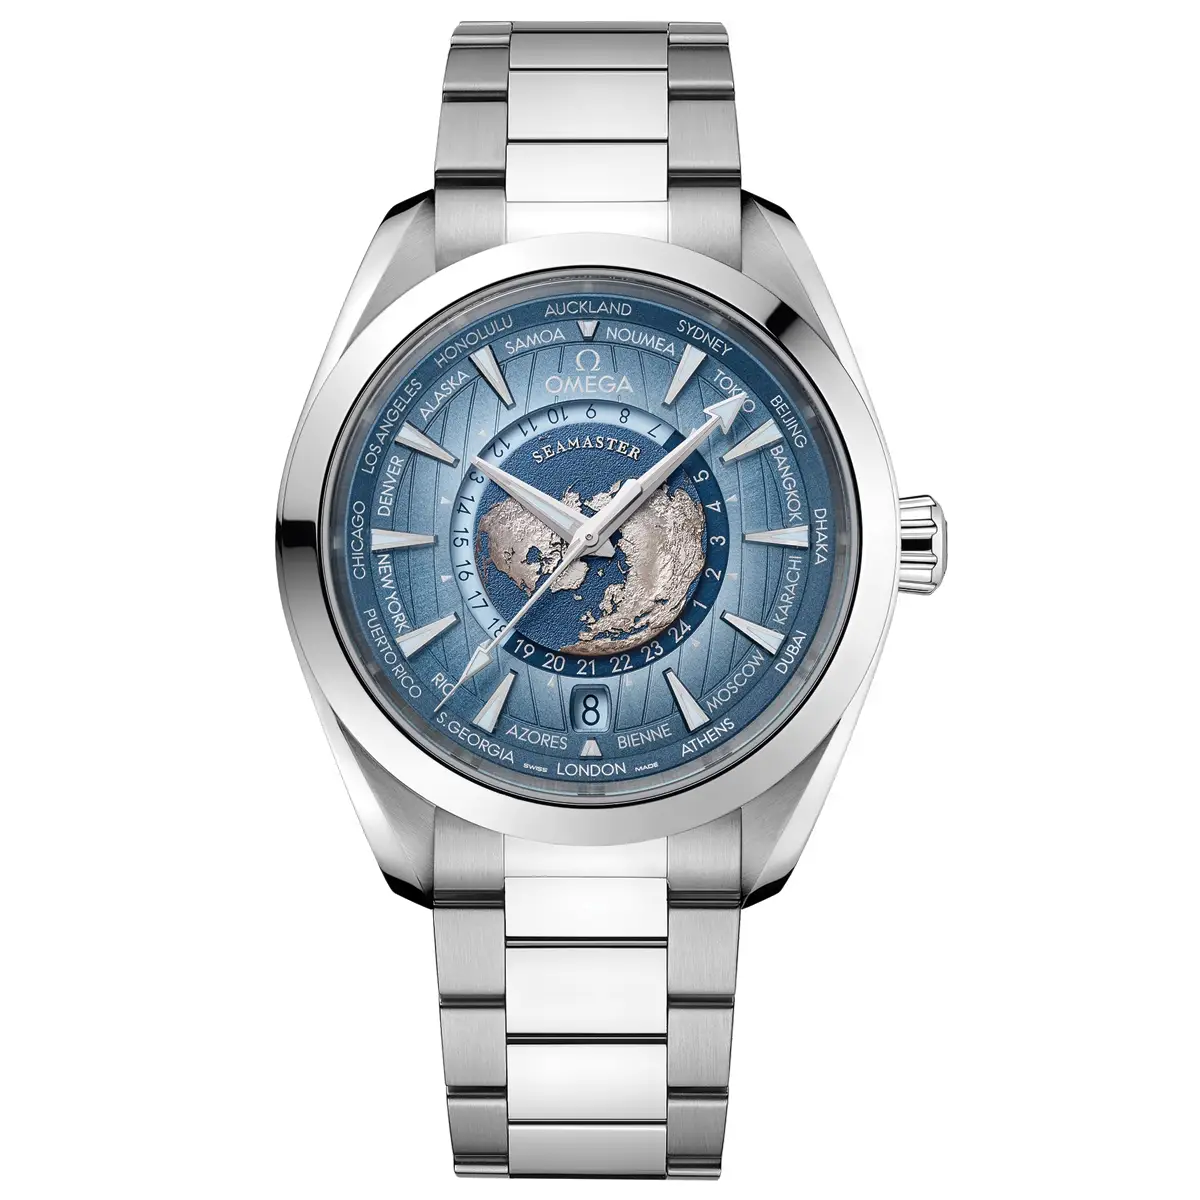 Đồng hồ Omega Seamaster Aqua Terra 150M Summer Blue 220.10.43.22.03.002 mặt số màu xanh. Thiết kế lộ cơ. Dây đeo bằng thép. Thân vỏ bằng thép.